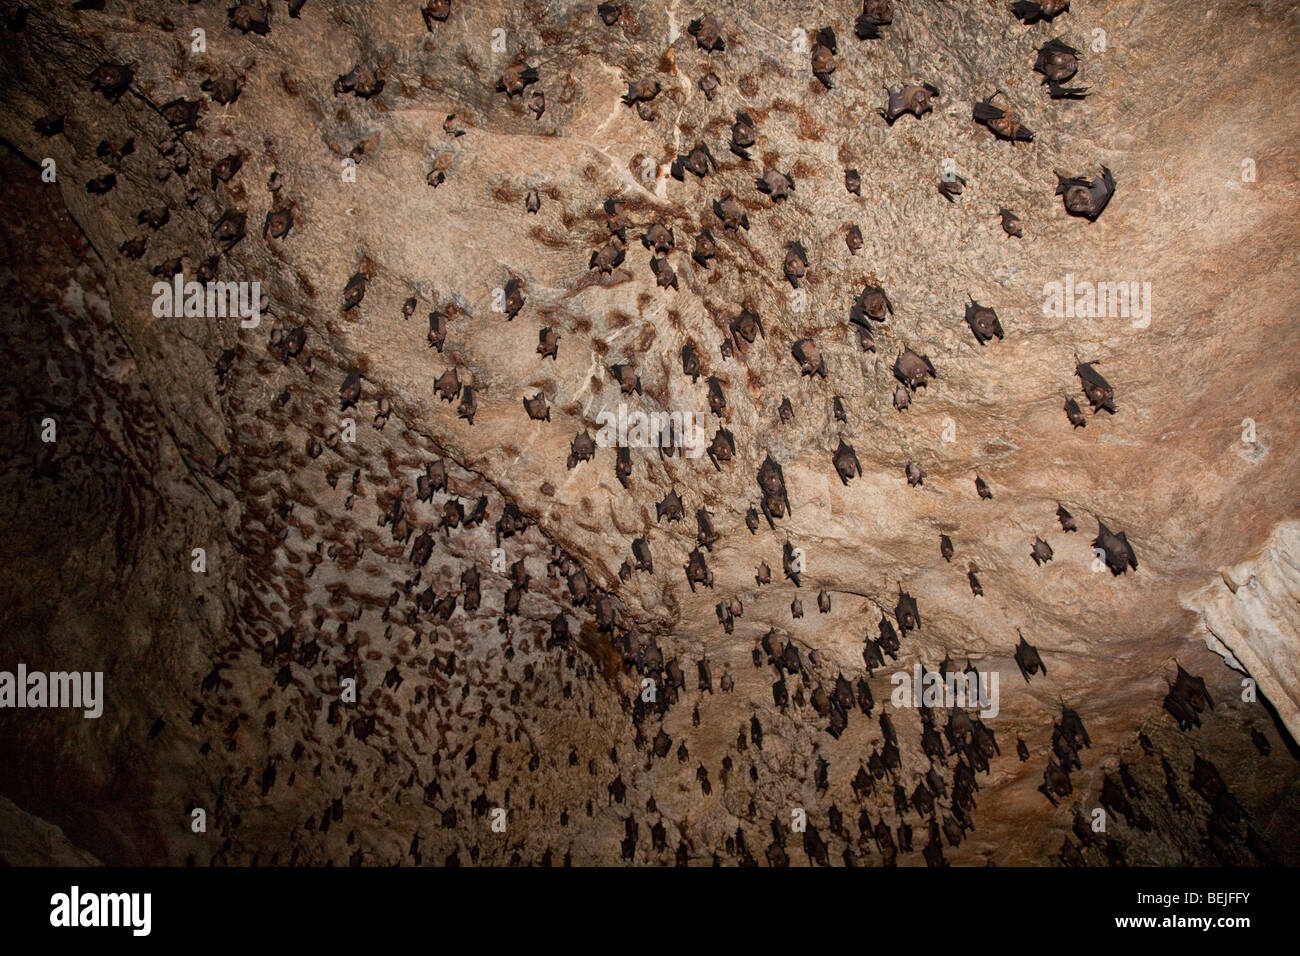 Les chauves-souris frugivores de Malaisie (environ quatre espèces différentes) se percher dans la grotte Gua Kelawar Pulau Langkawi Malaisie Banque D'Images